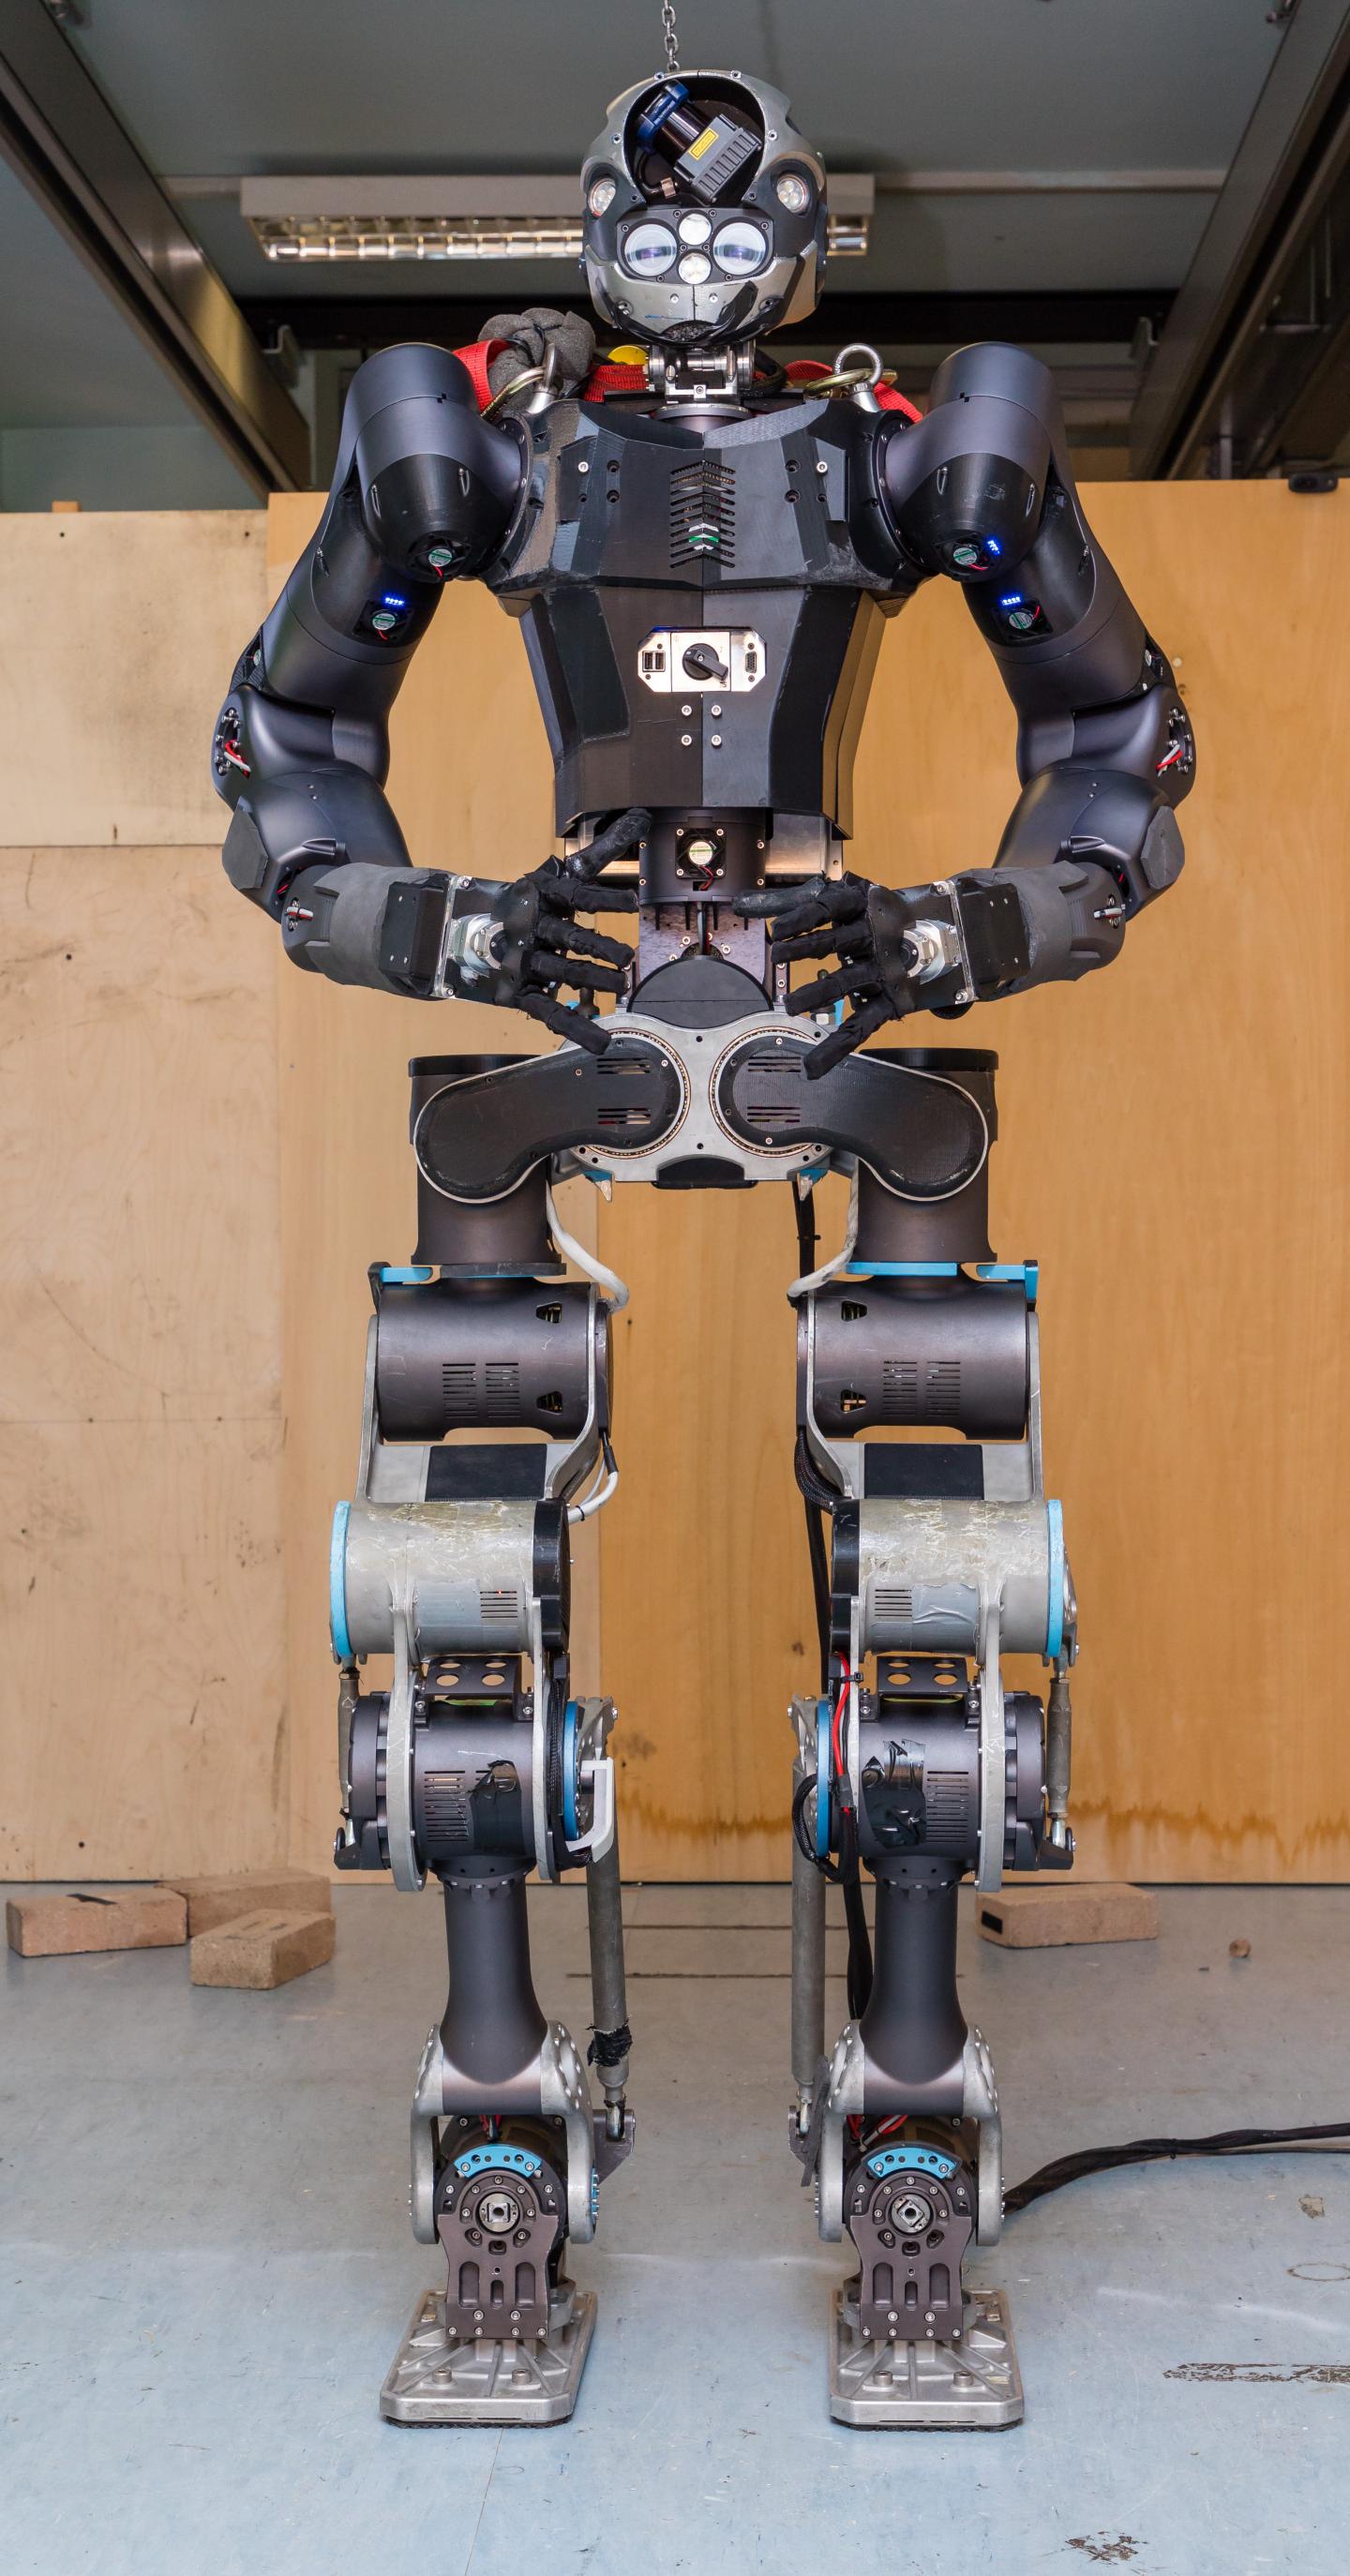 WALK-MAN Humanoid Robot as a Robotic Avatar